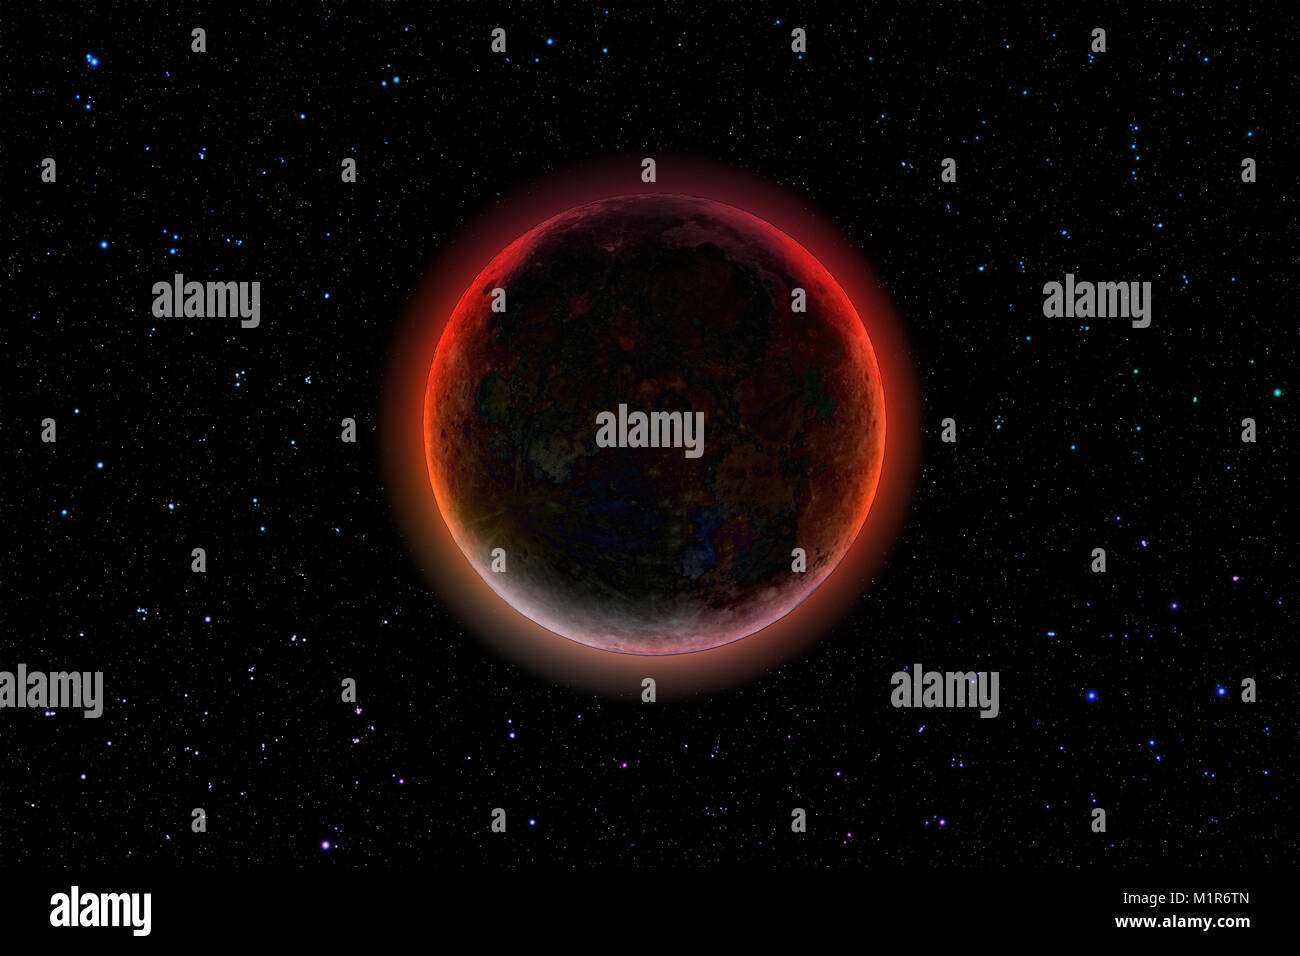 Spazio profondo imaginery, distante buio misterioso pianeta brilla contro il cielo stellato Foto Stock